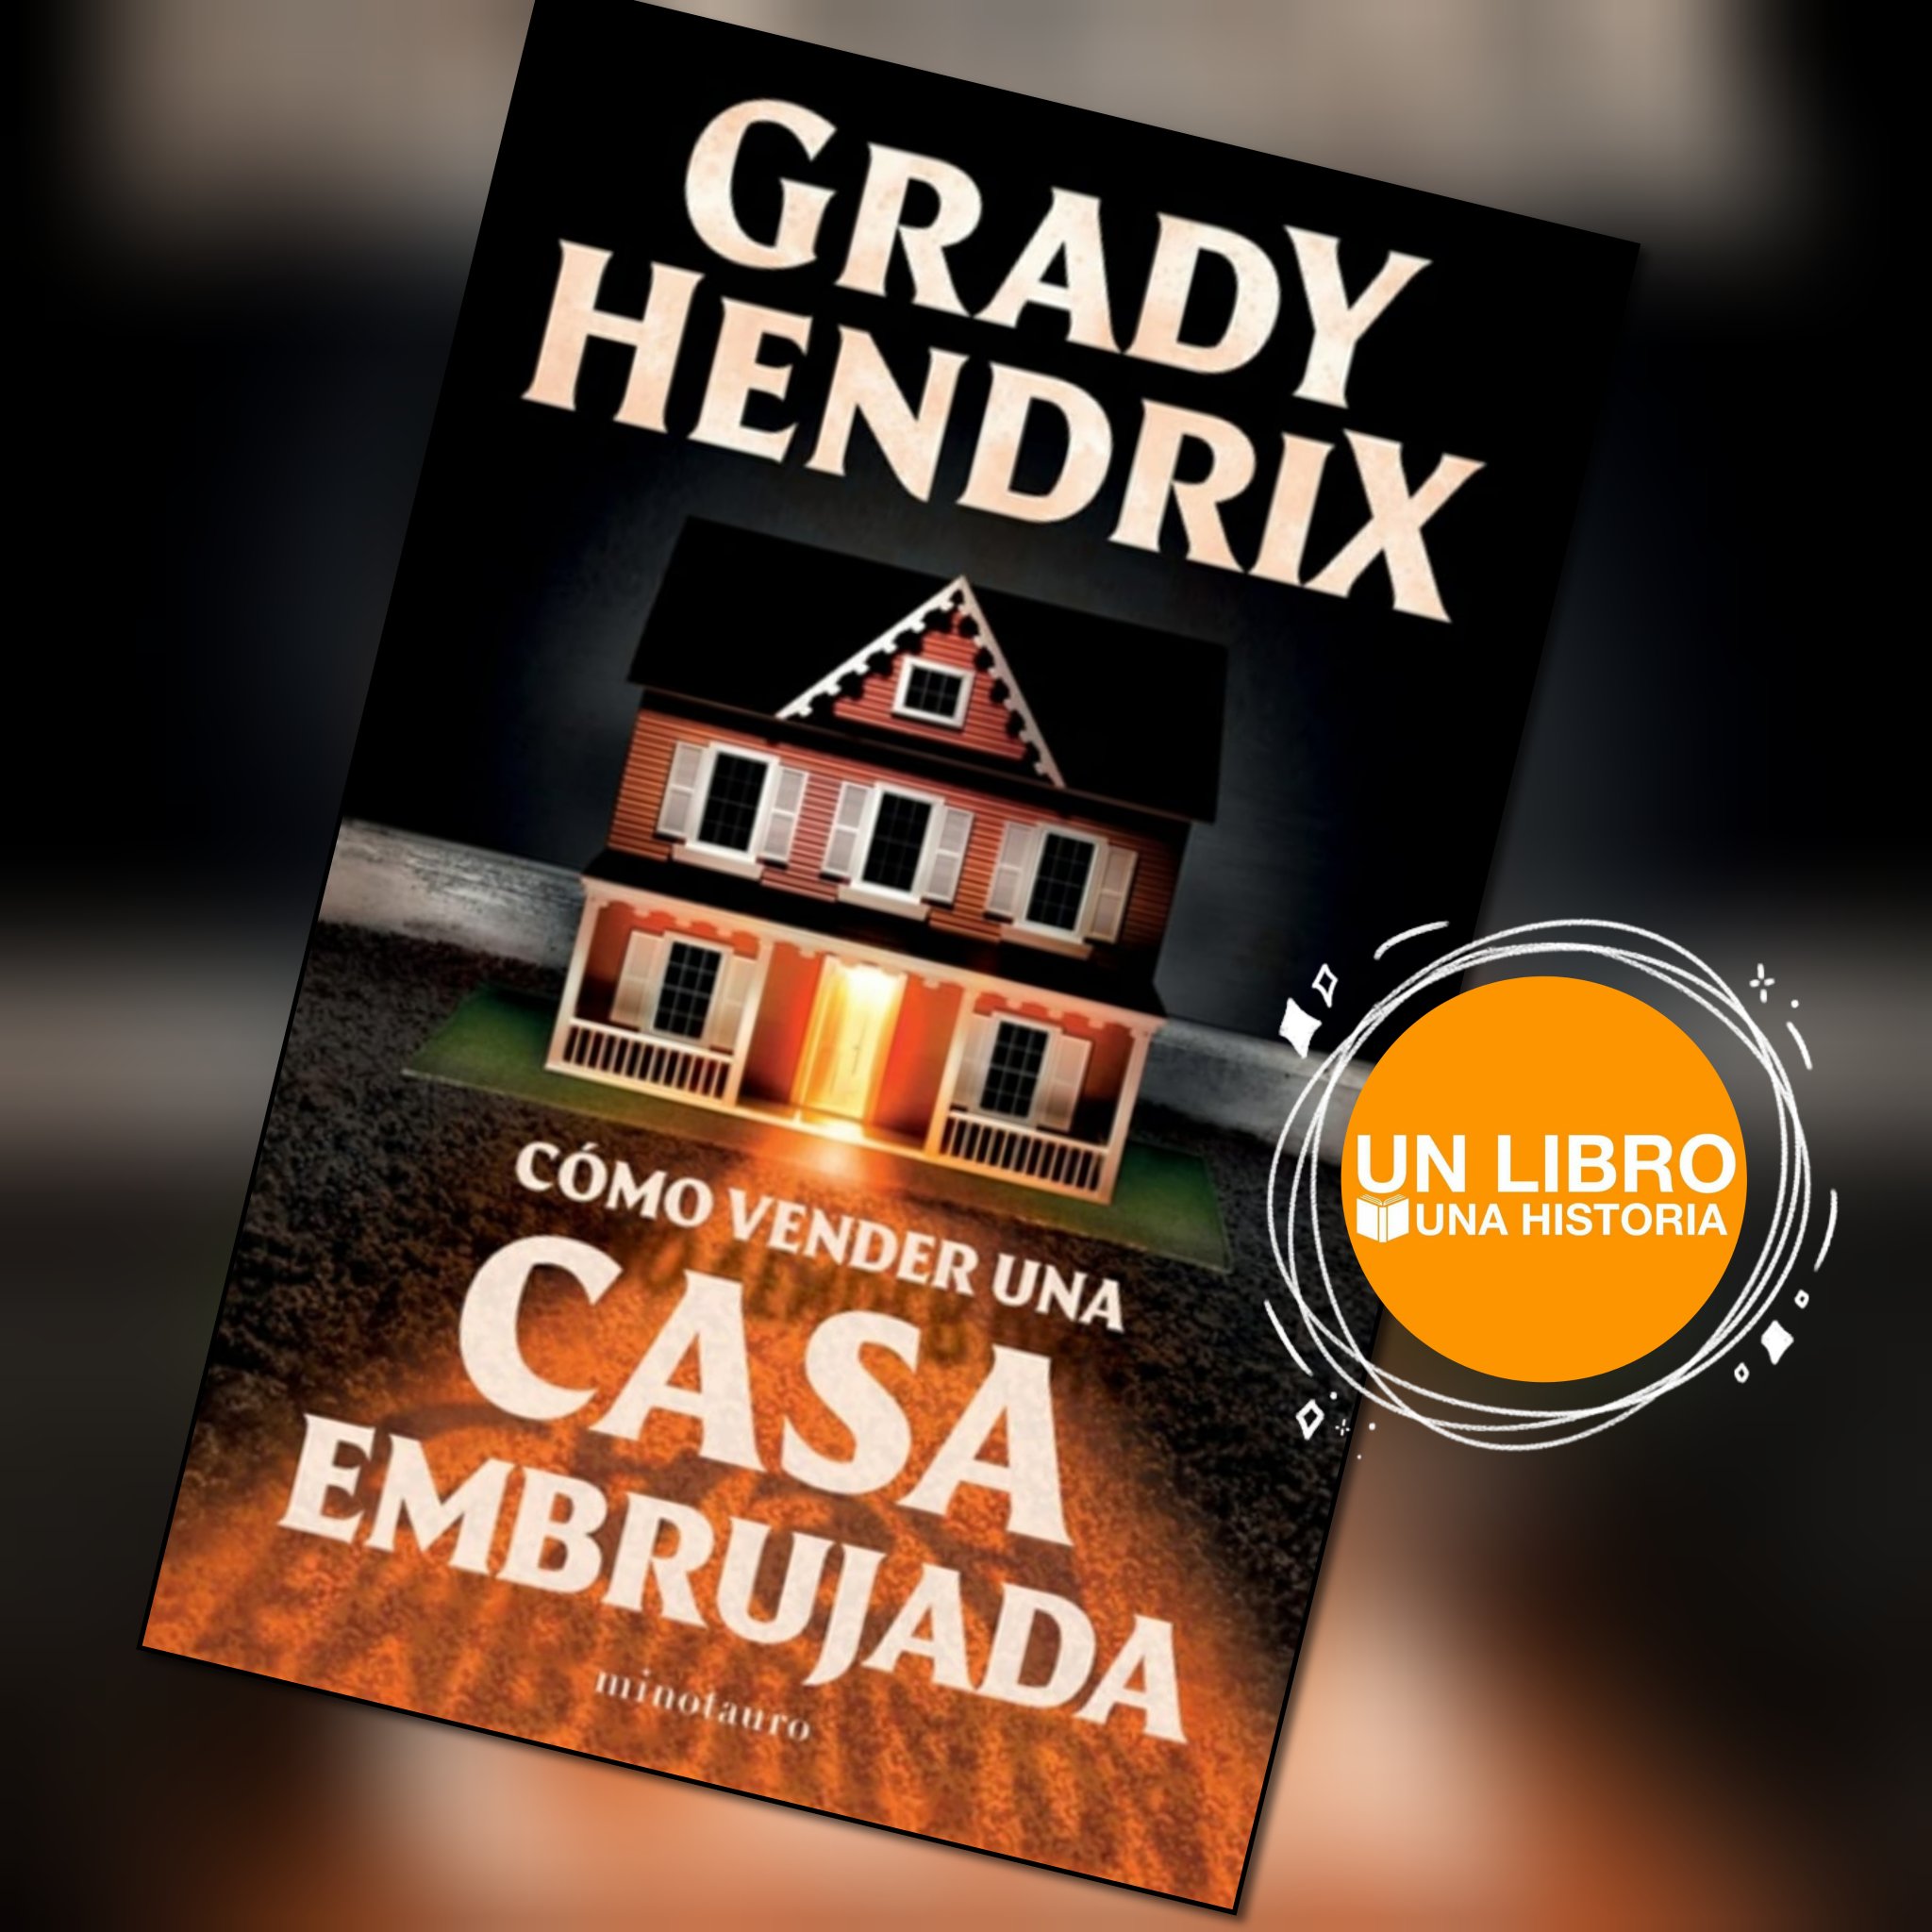 Escucha Cómo vender una casa encantada de Grady Hendrix - Audiolibro